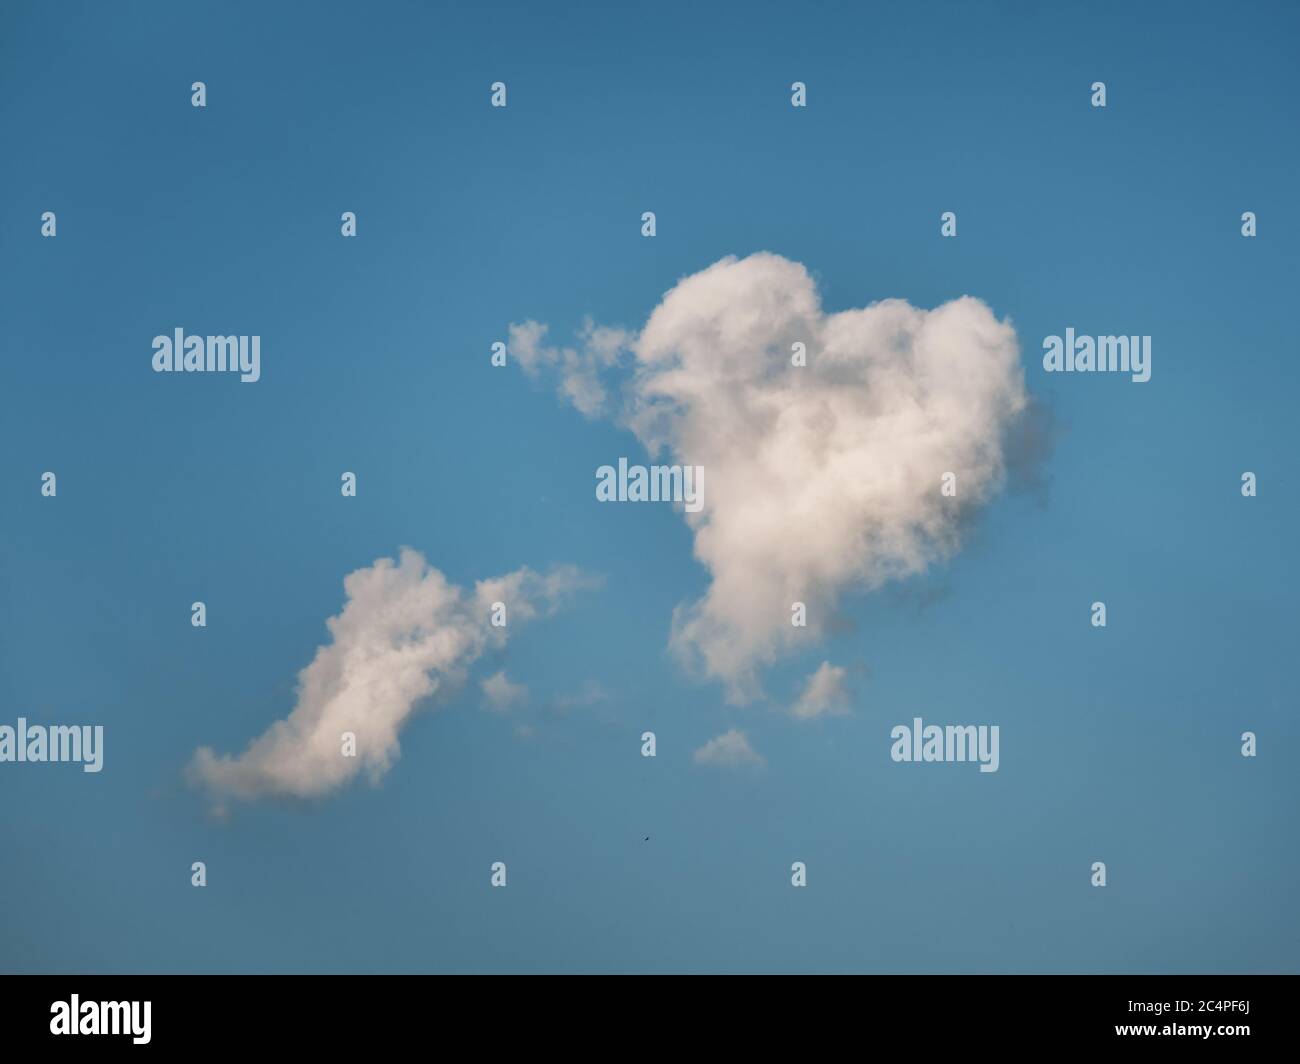 Herzförmige Wolke am blauen Himmel Stockfoto